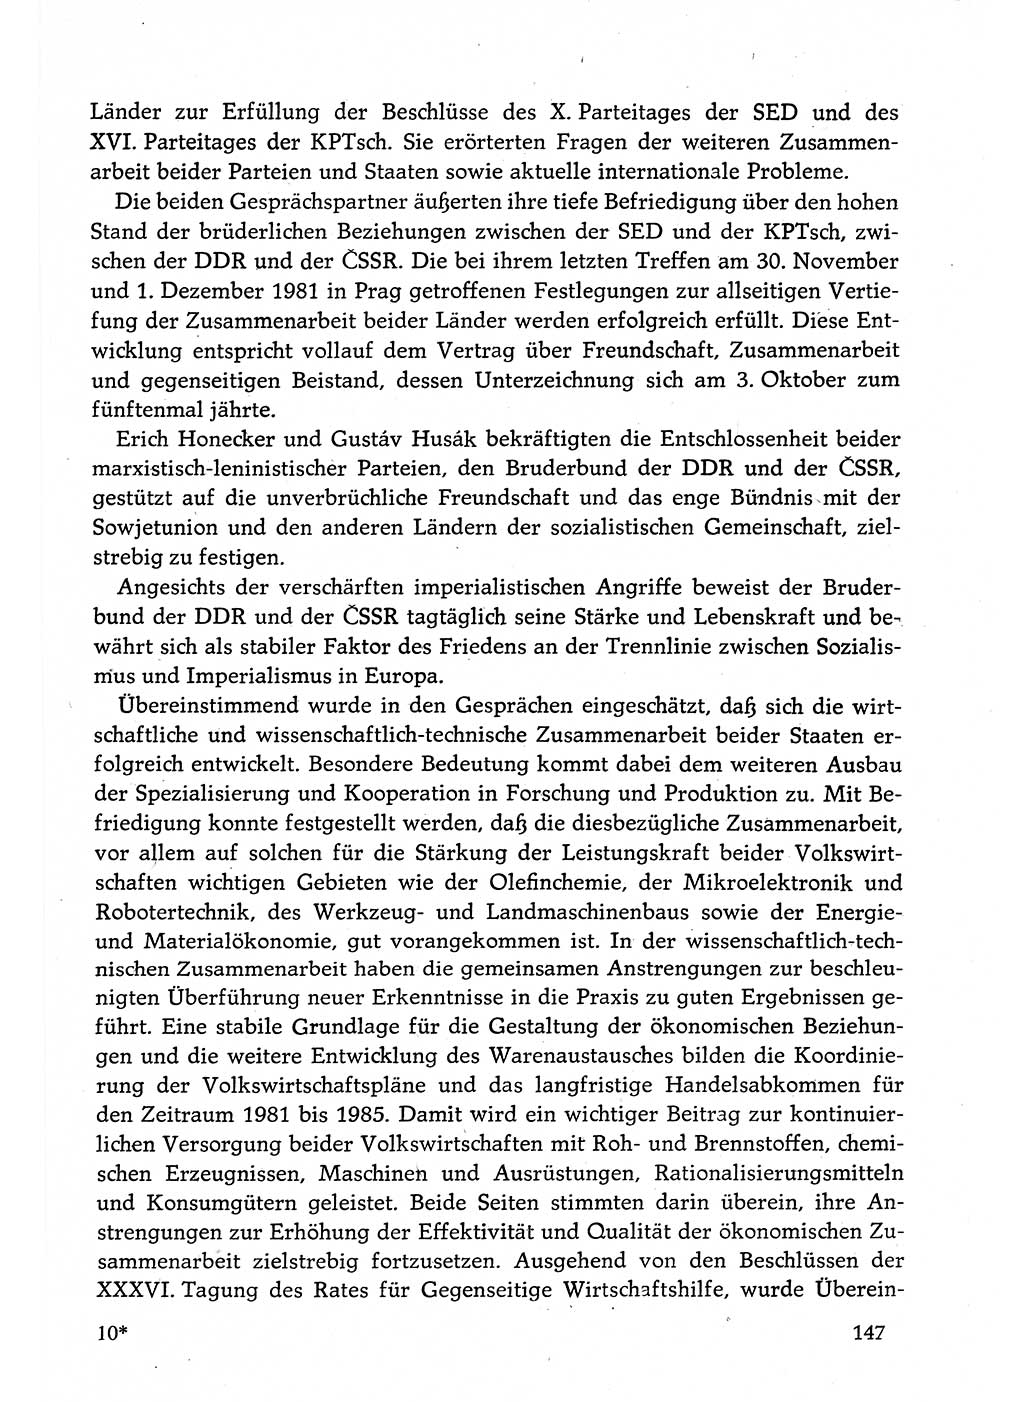 Dokumente der Sozialistischen Einheitspartei Deutschlands (SED) [Deutsche Demokratische Republik (DDR)] 1982-1983, Seite 147 (Dok. SED DDR 1982-1983, S. 147)